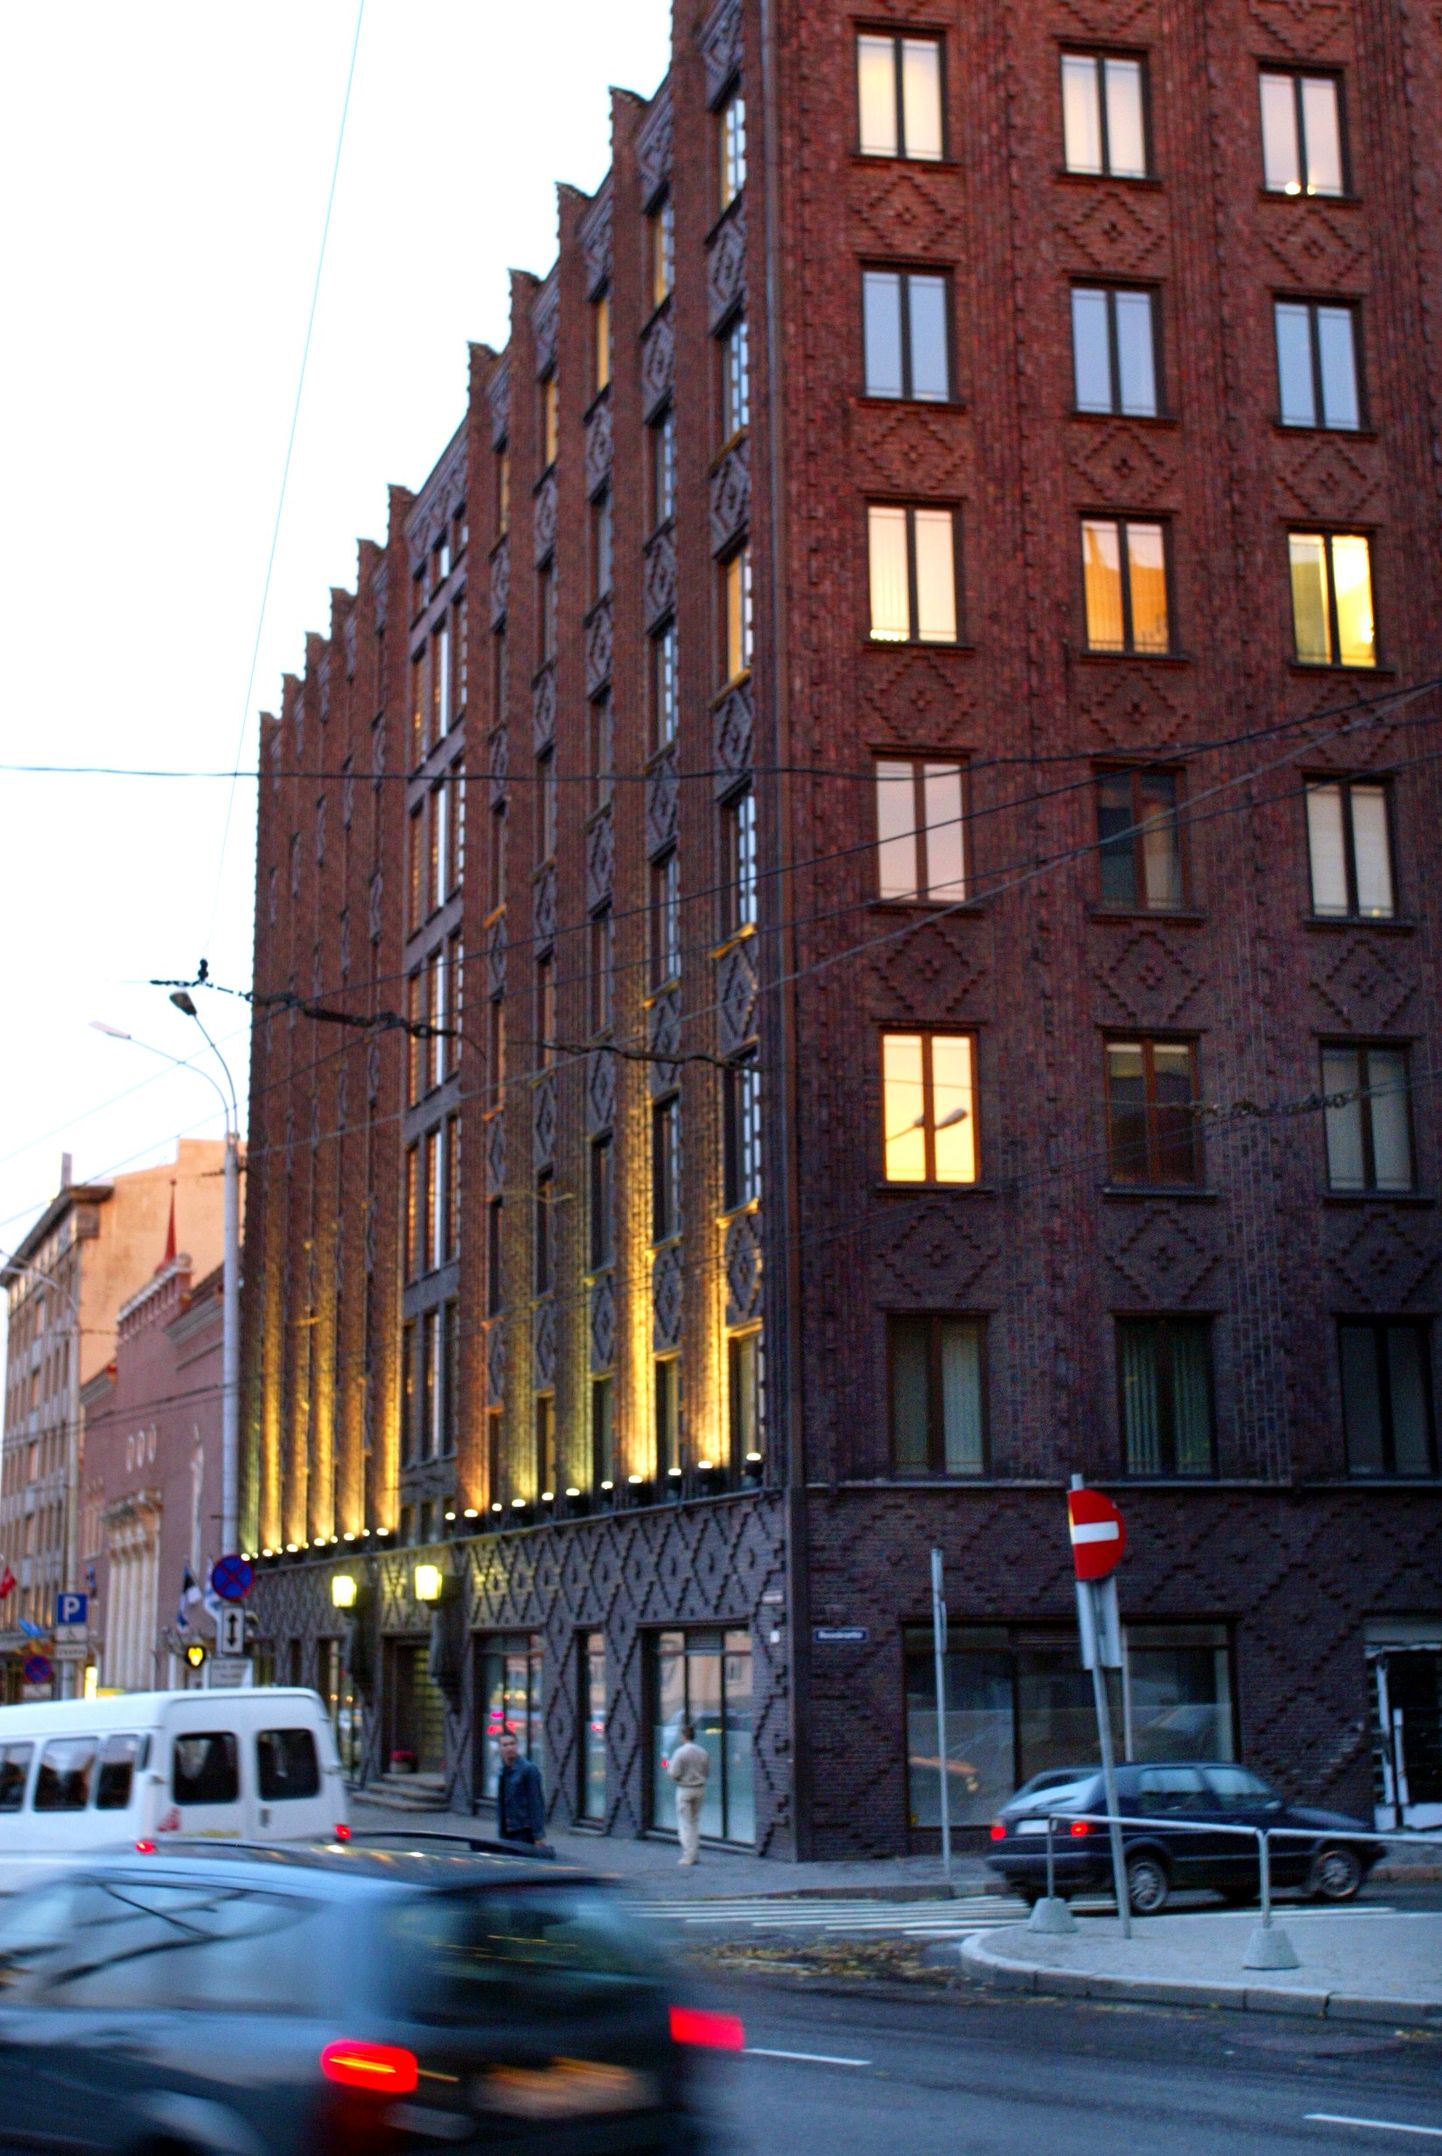 Tasuta nõustamine toimub Tallinna linnavalitsuse teenindussaalis.